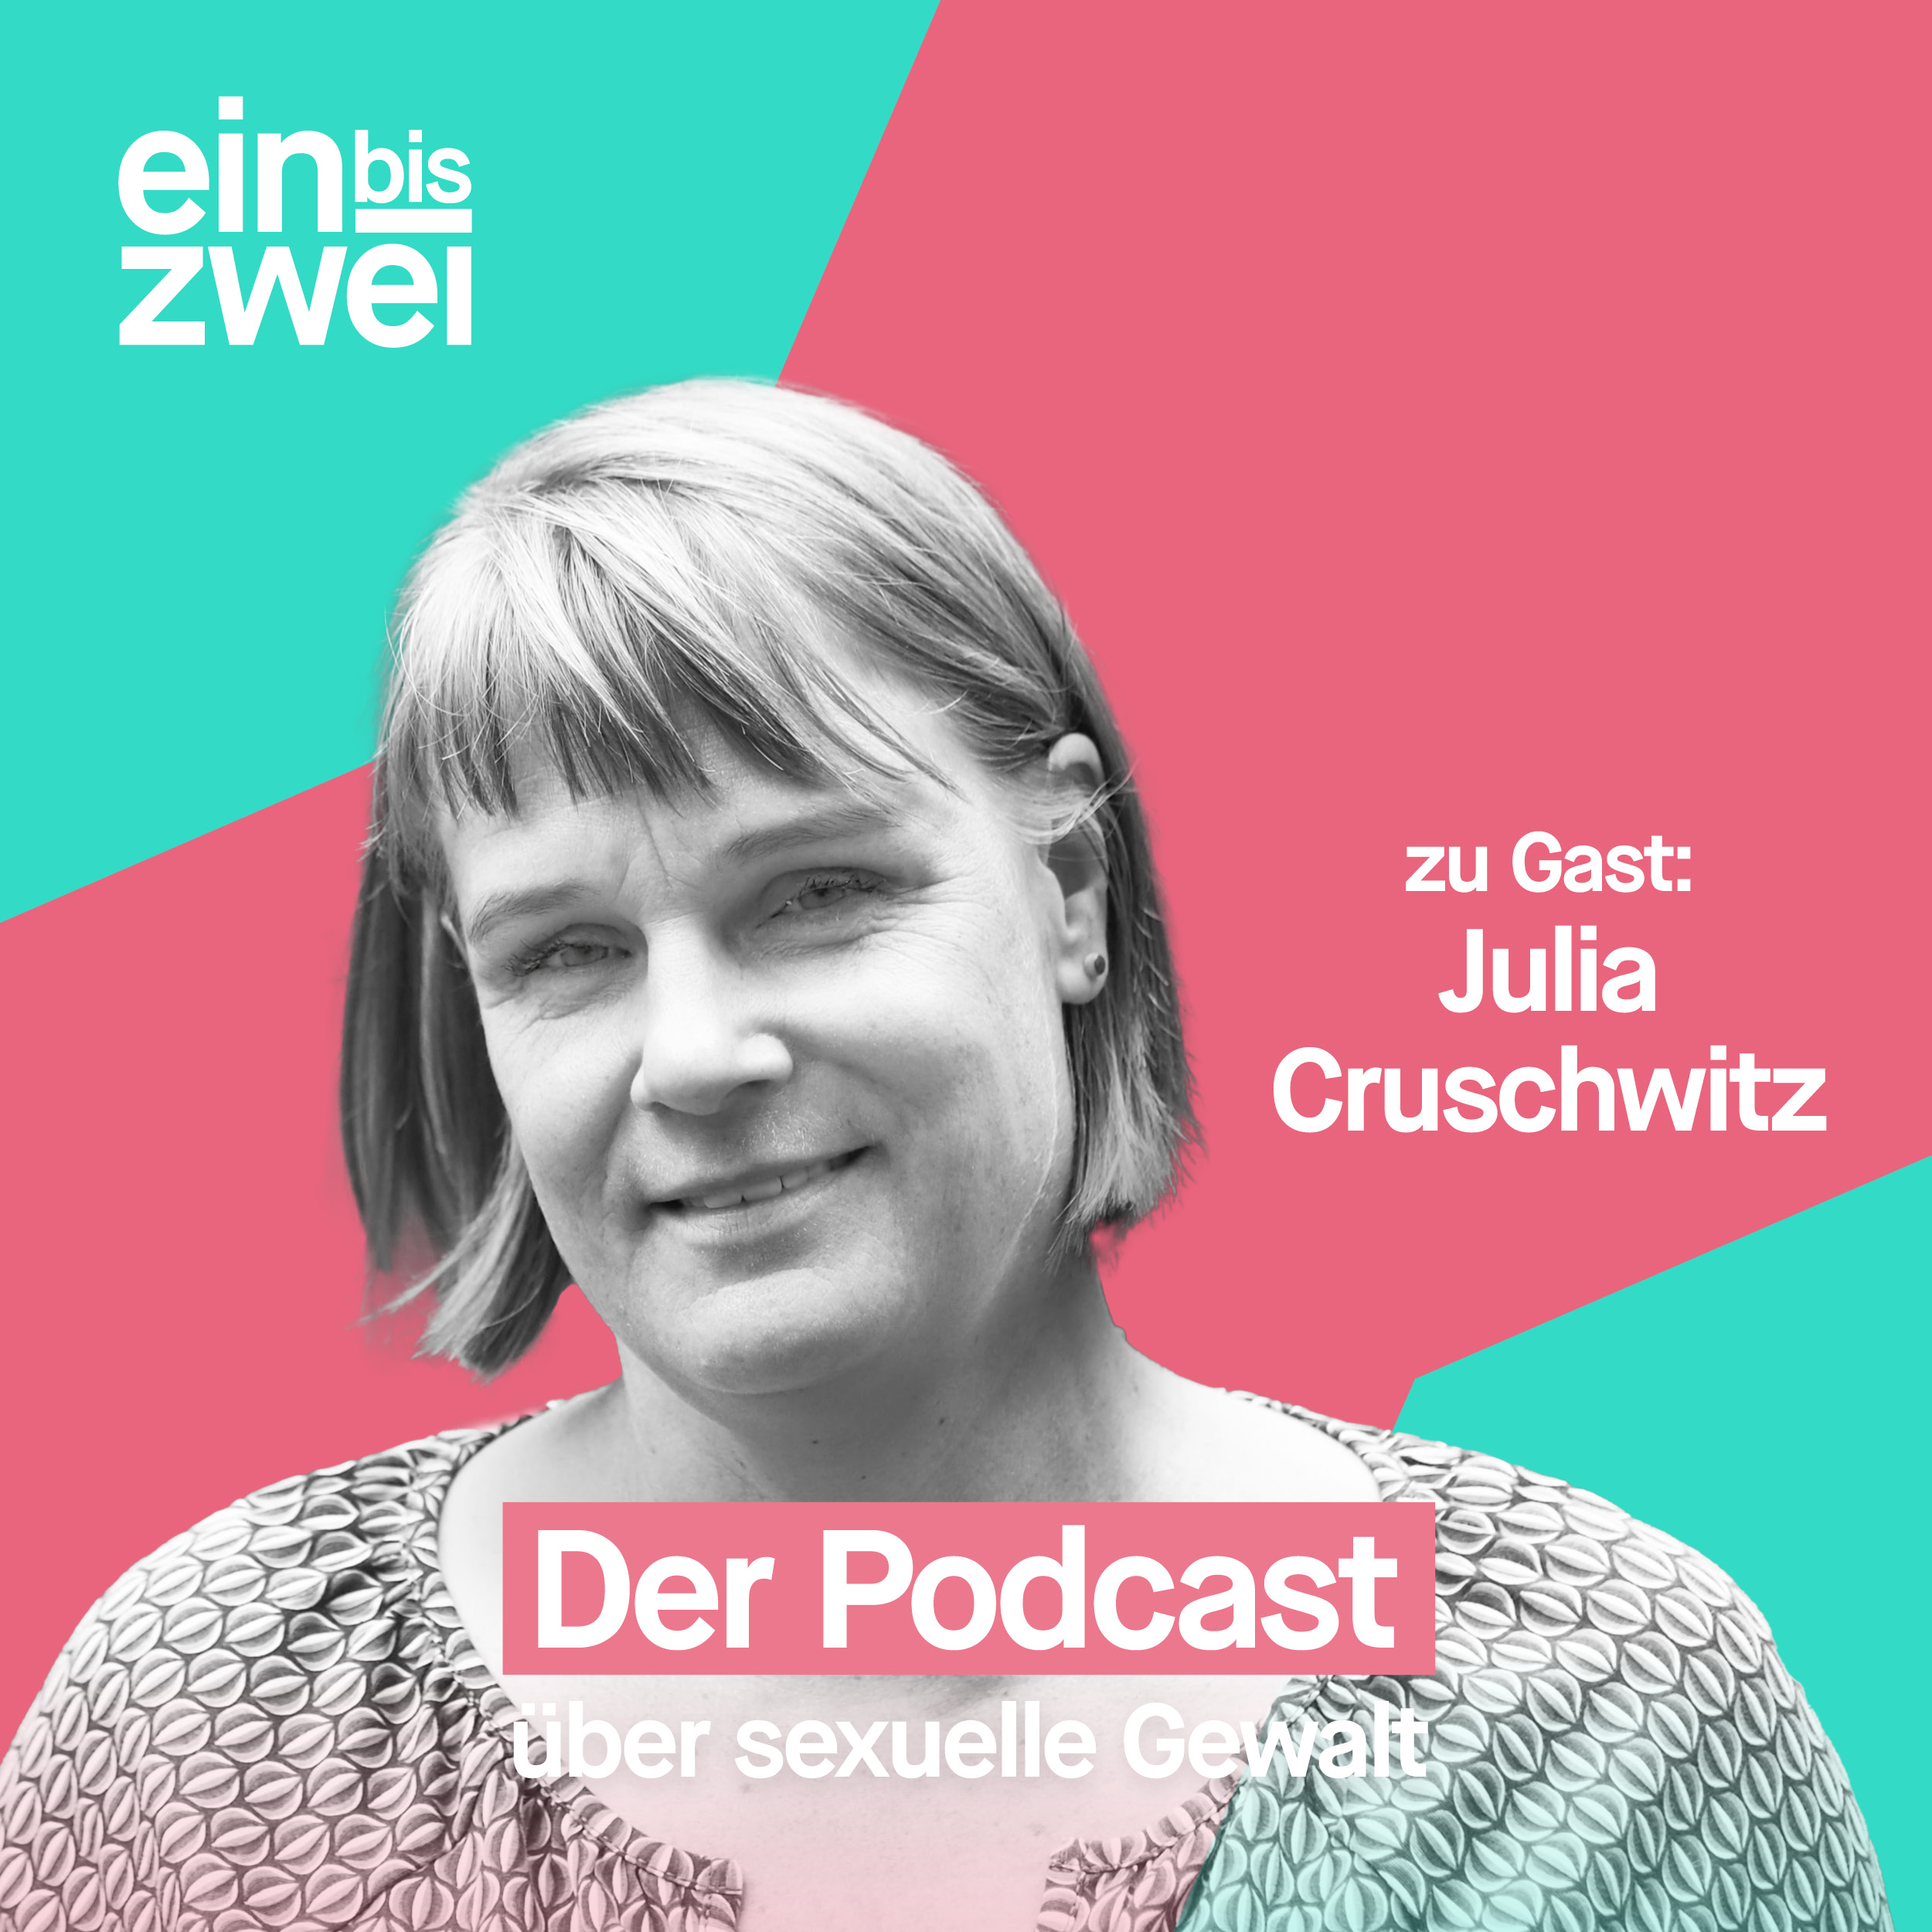 Julia Cruschwitz